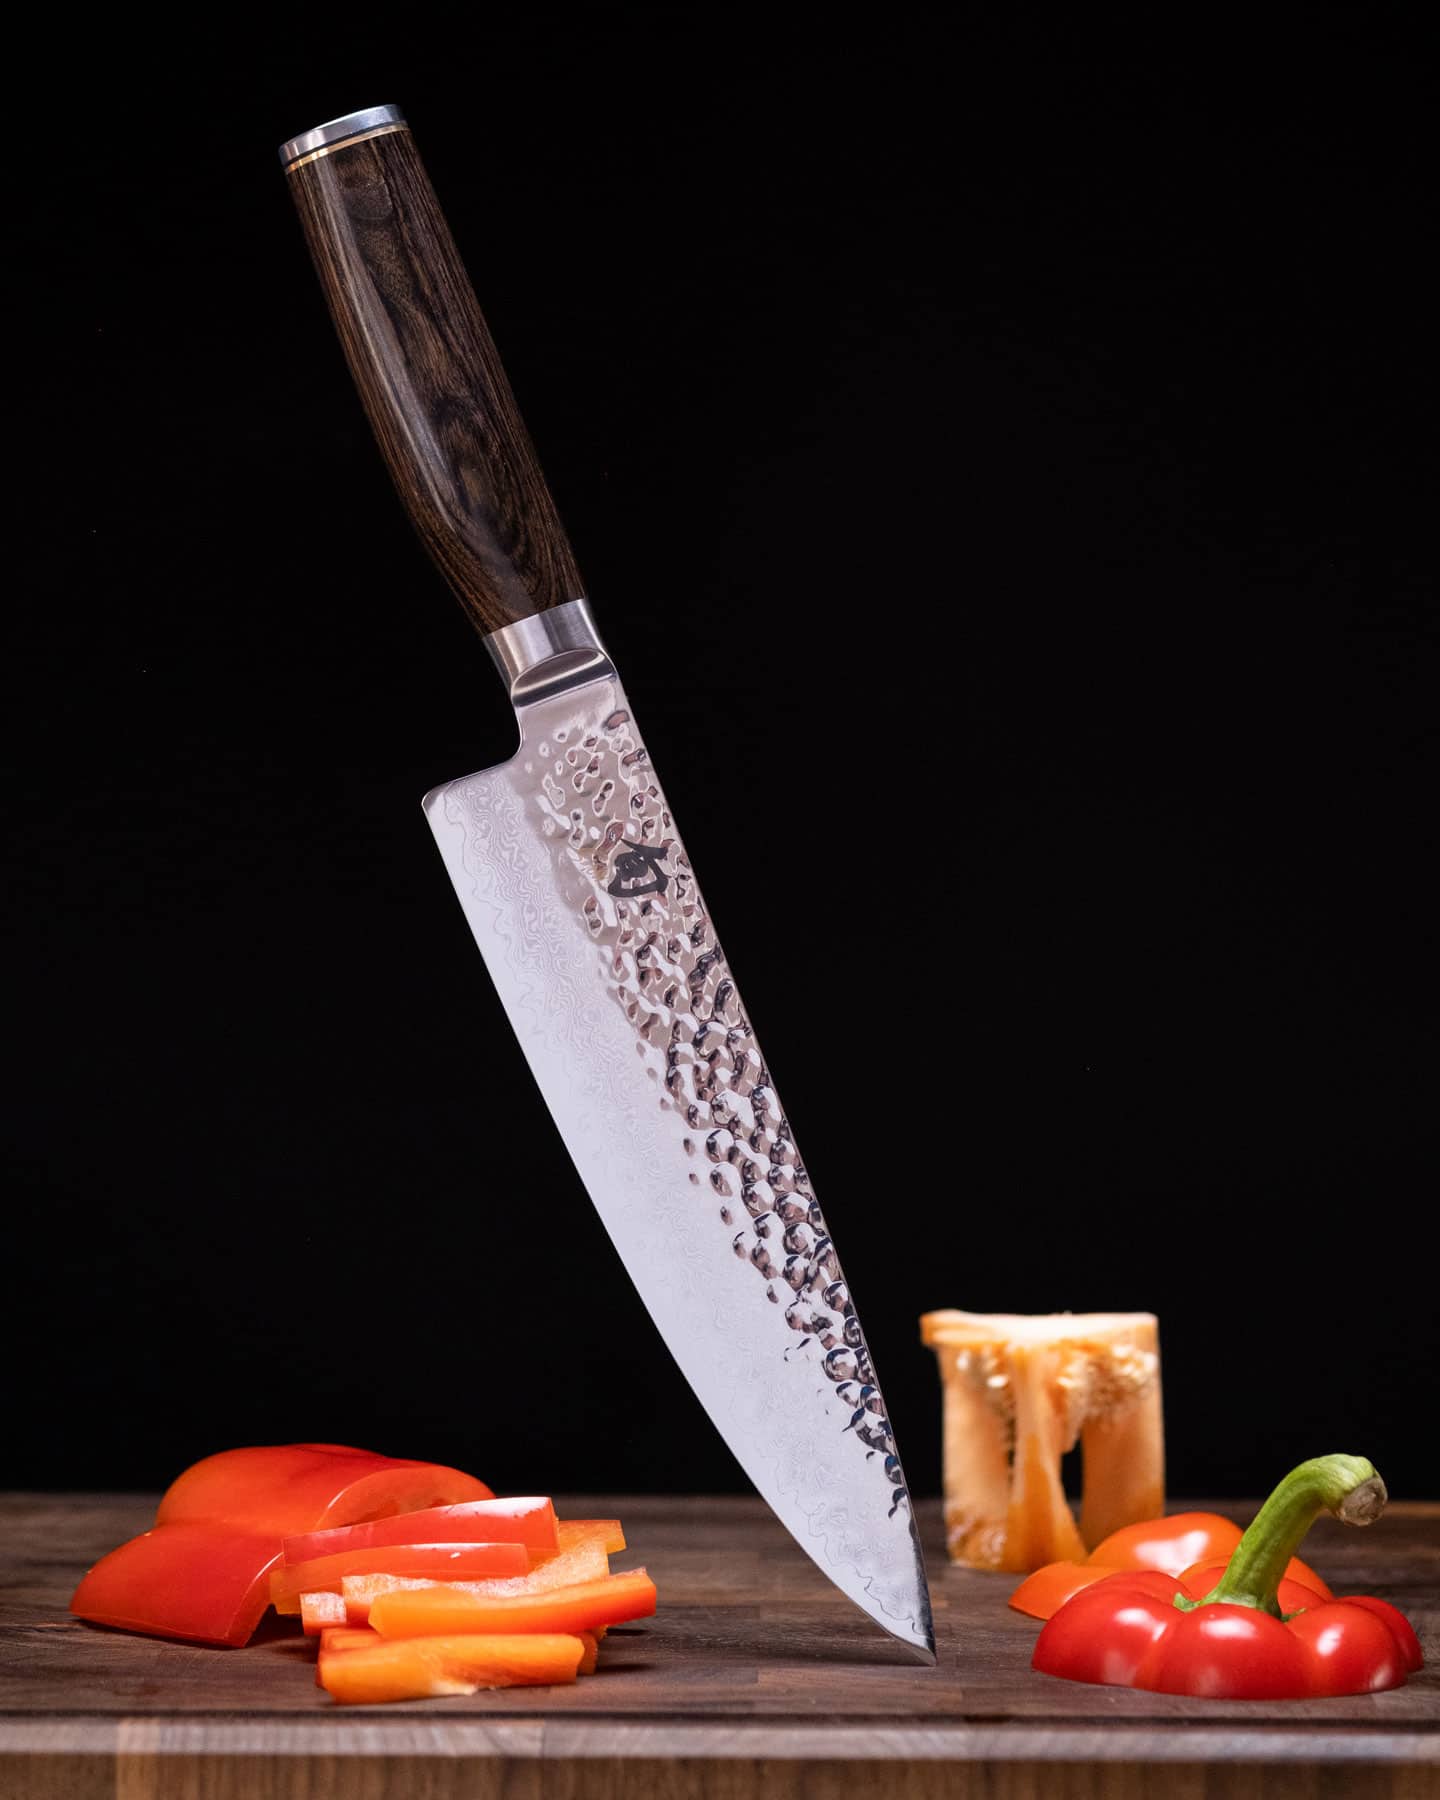 https://www.nothingbutknives.com/wp-content/uploads/2022/07/Shun-Premier-8-Inch-Chef-Knife-Review.jpg